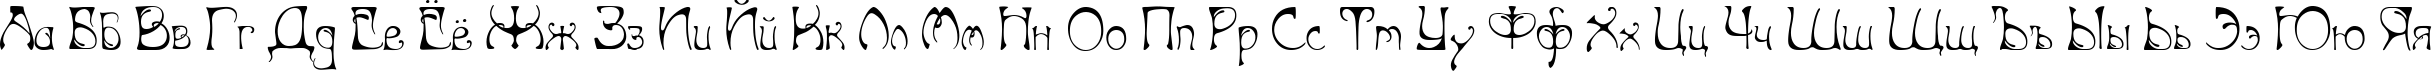 Пример написания русского алфавита шрифтом Art Nouveau-Bistro